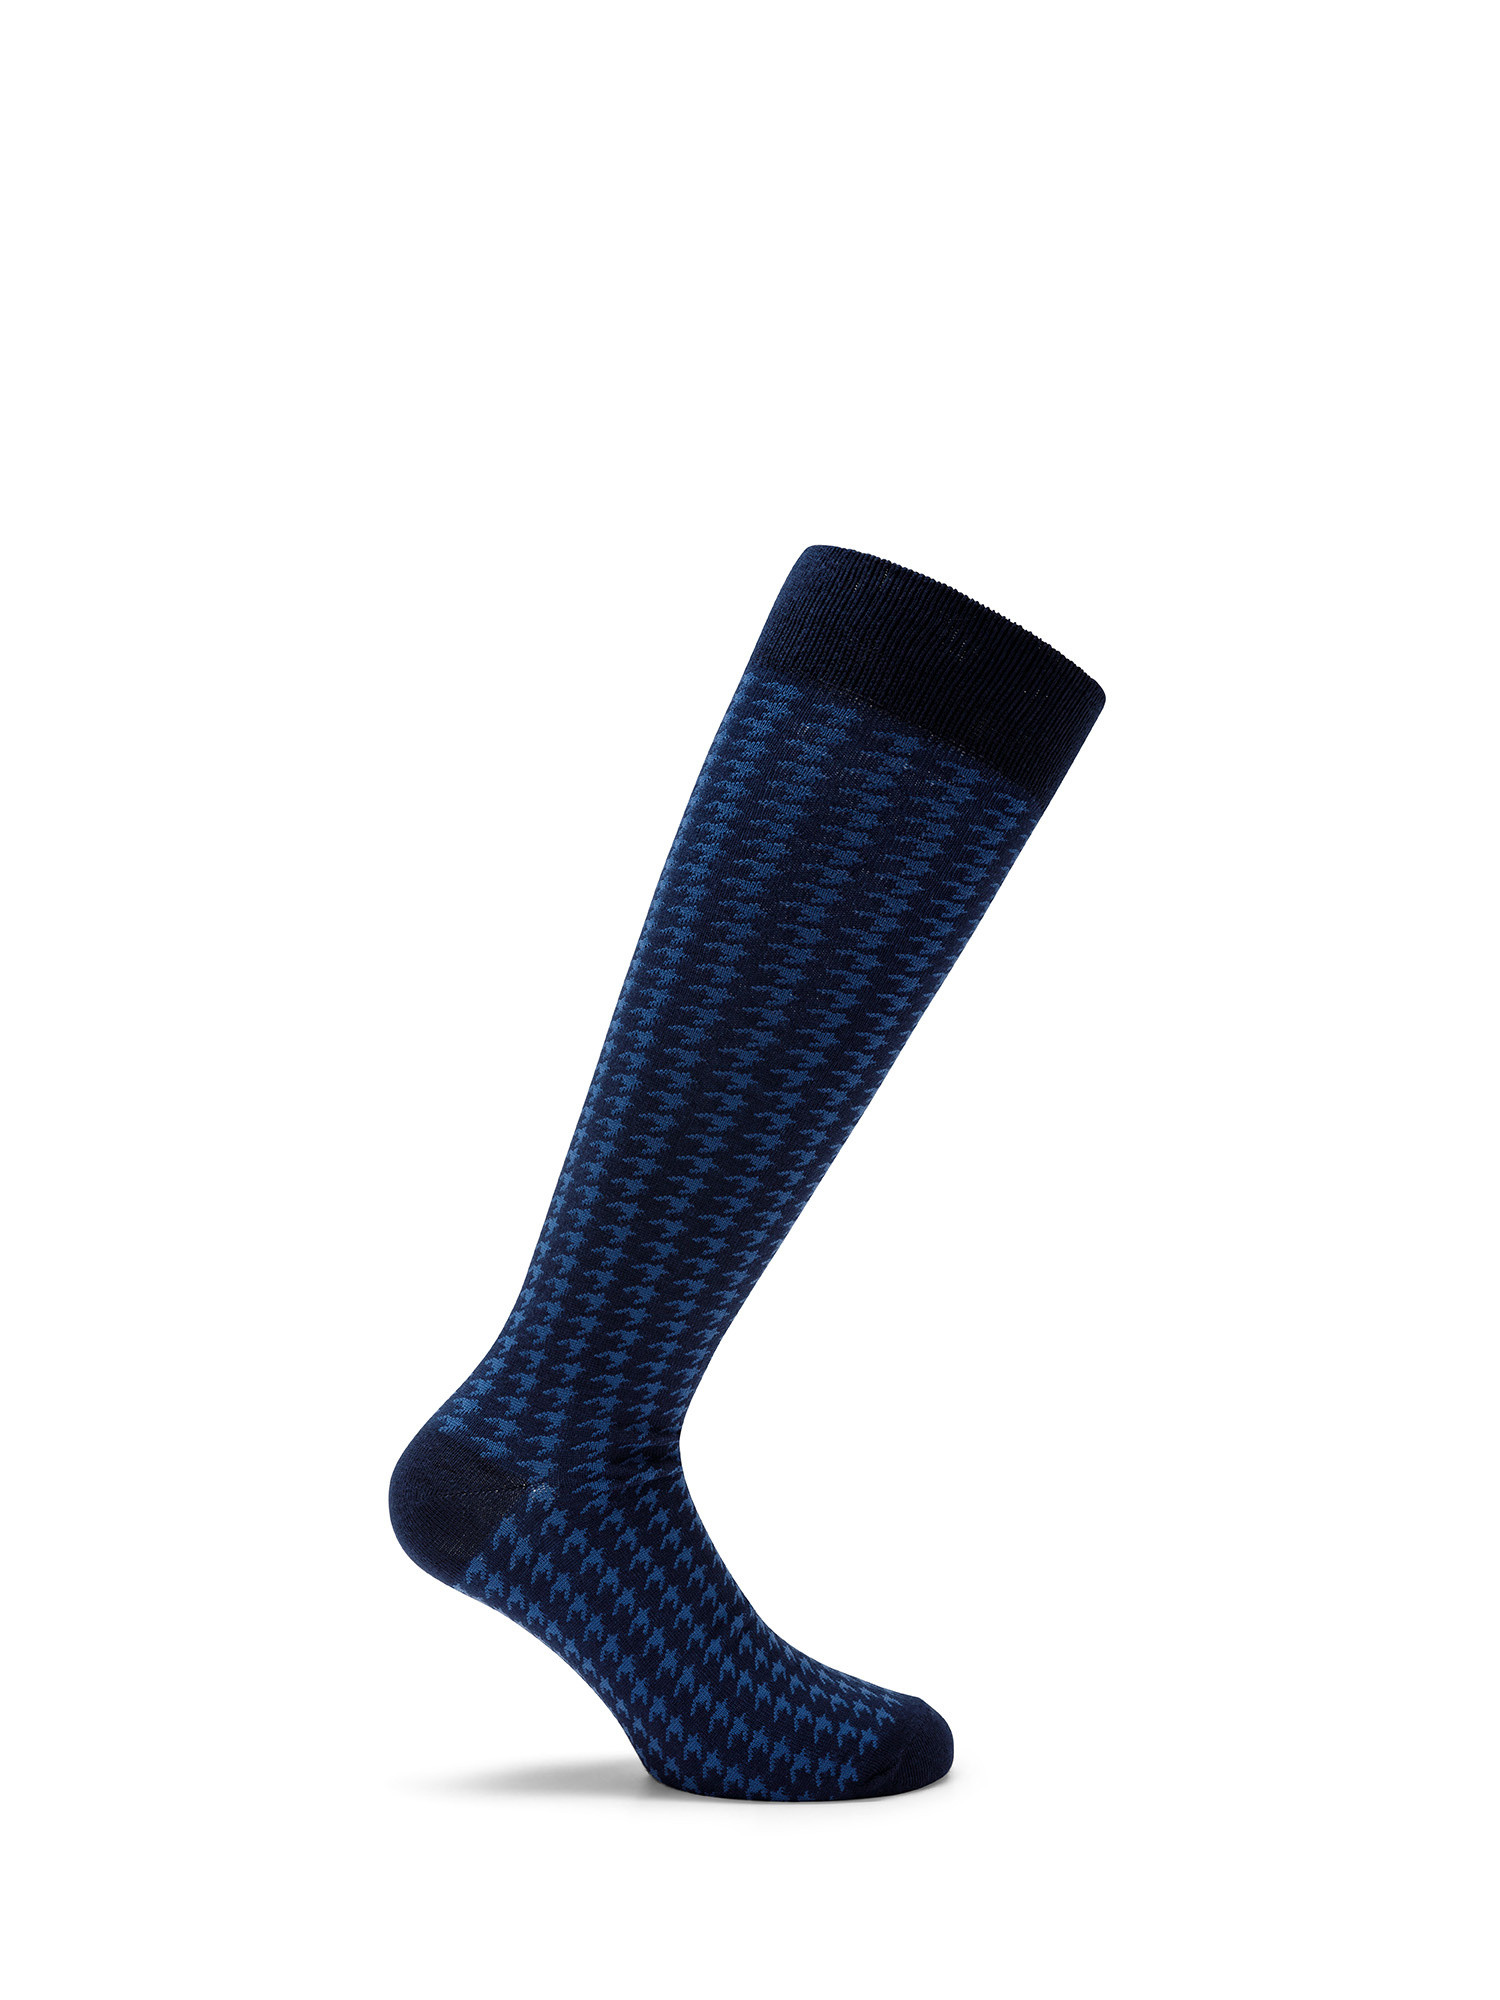 Luca D'Altieri - Set of 3 patterned long socks, Dark Blue, large image number 3